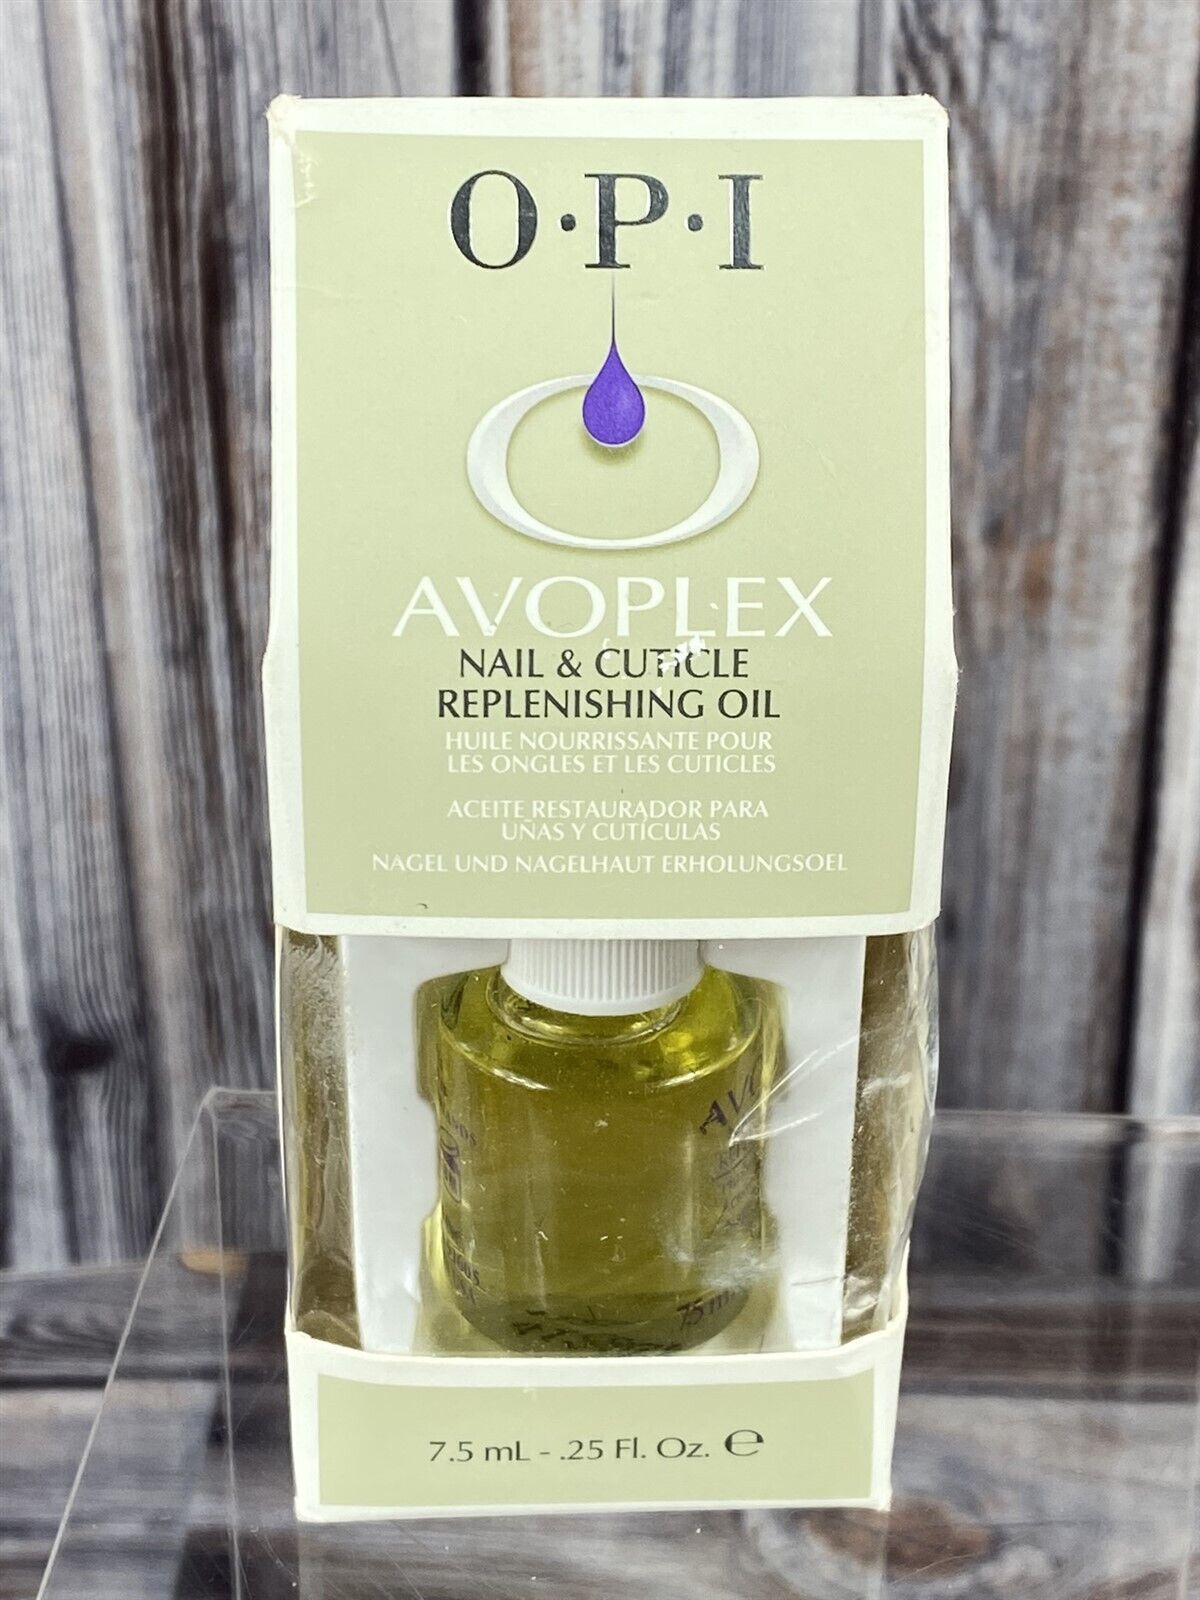 OPI Avoplex Nail & Cuticle Replenishing Oil - .25 fl oz - New - $4.99